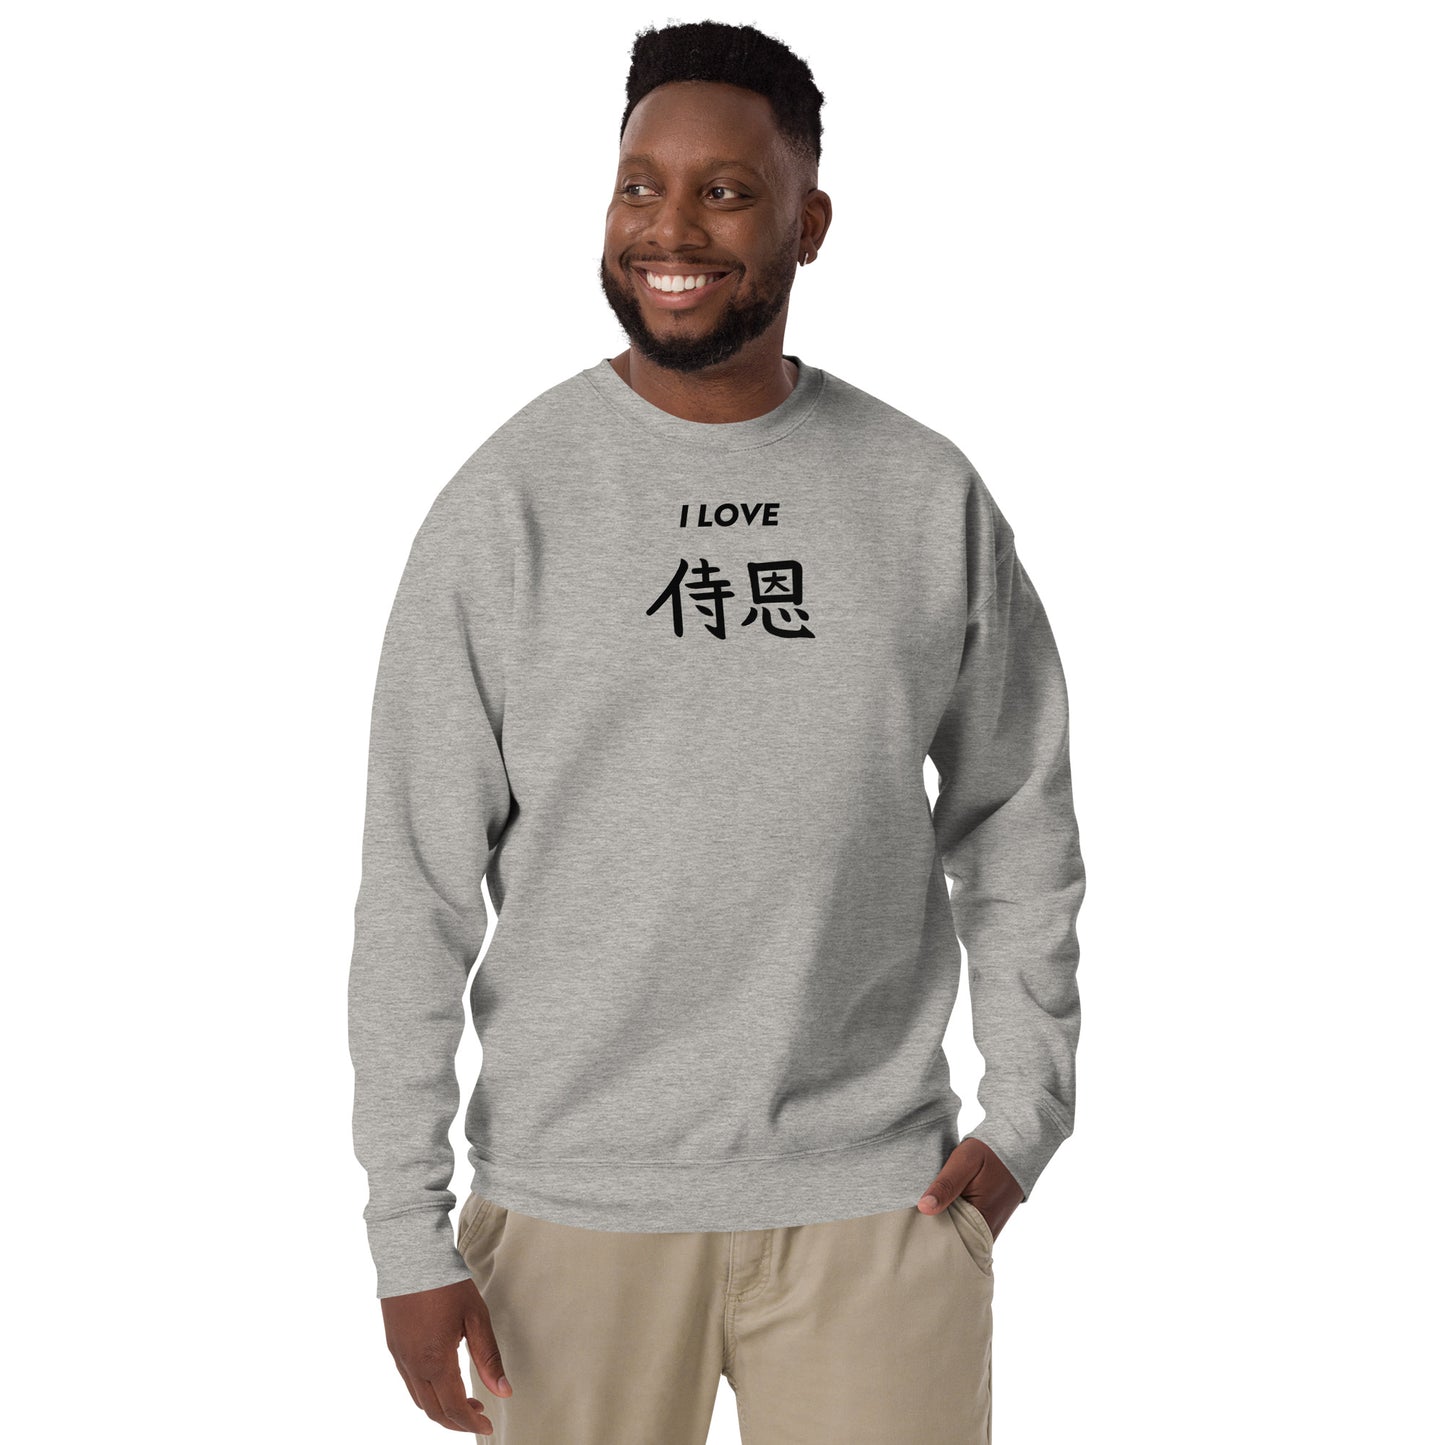 "John" in Japanese Kanji, Unisex Sweatshirt (Light color, "I LOVE" series)